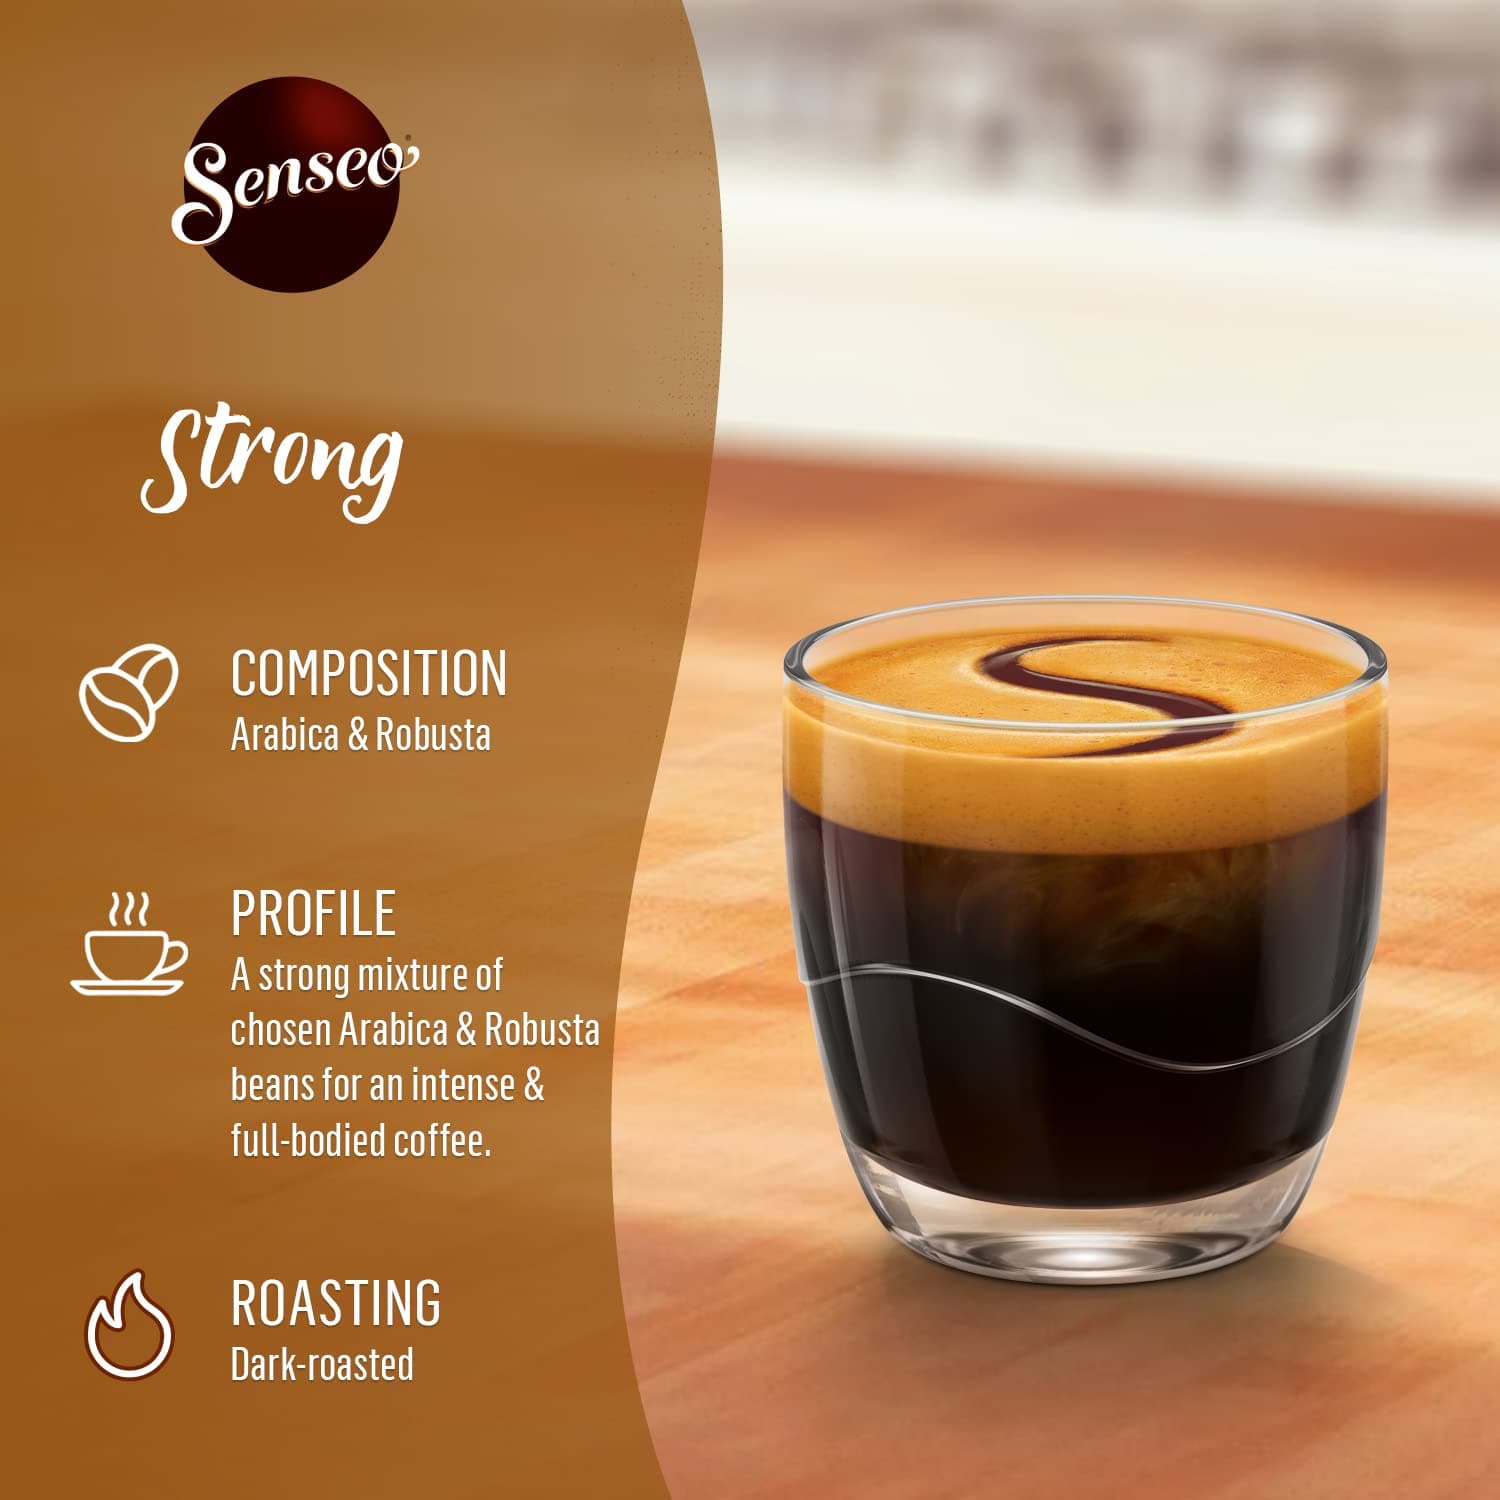 Senseo Mild Coffee Pods 36 Count - Peters Gourmet Market